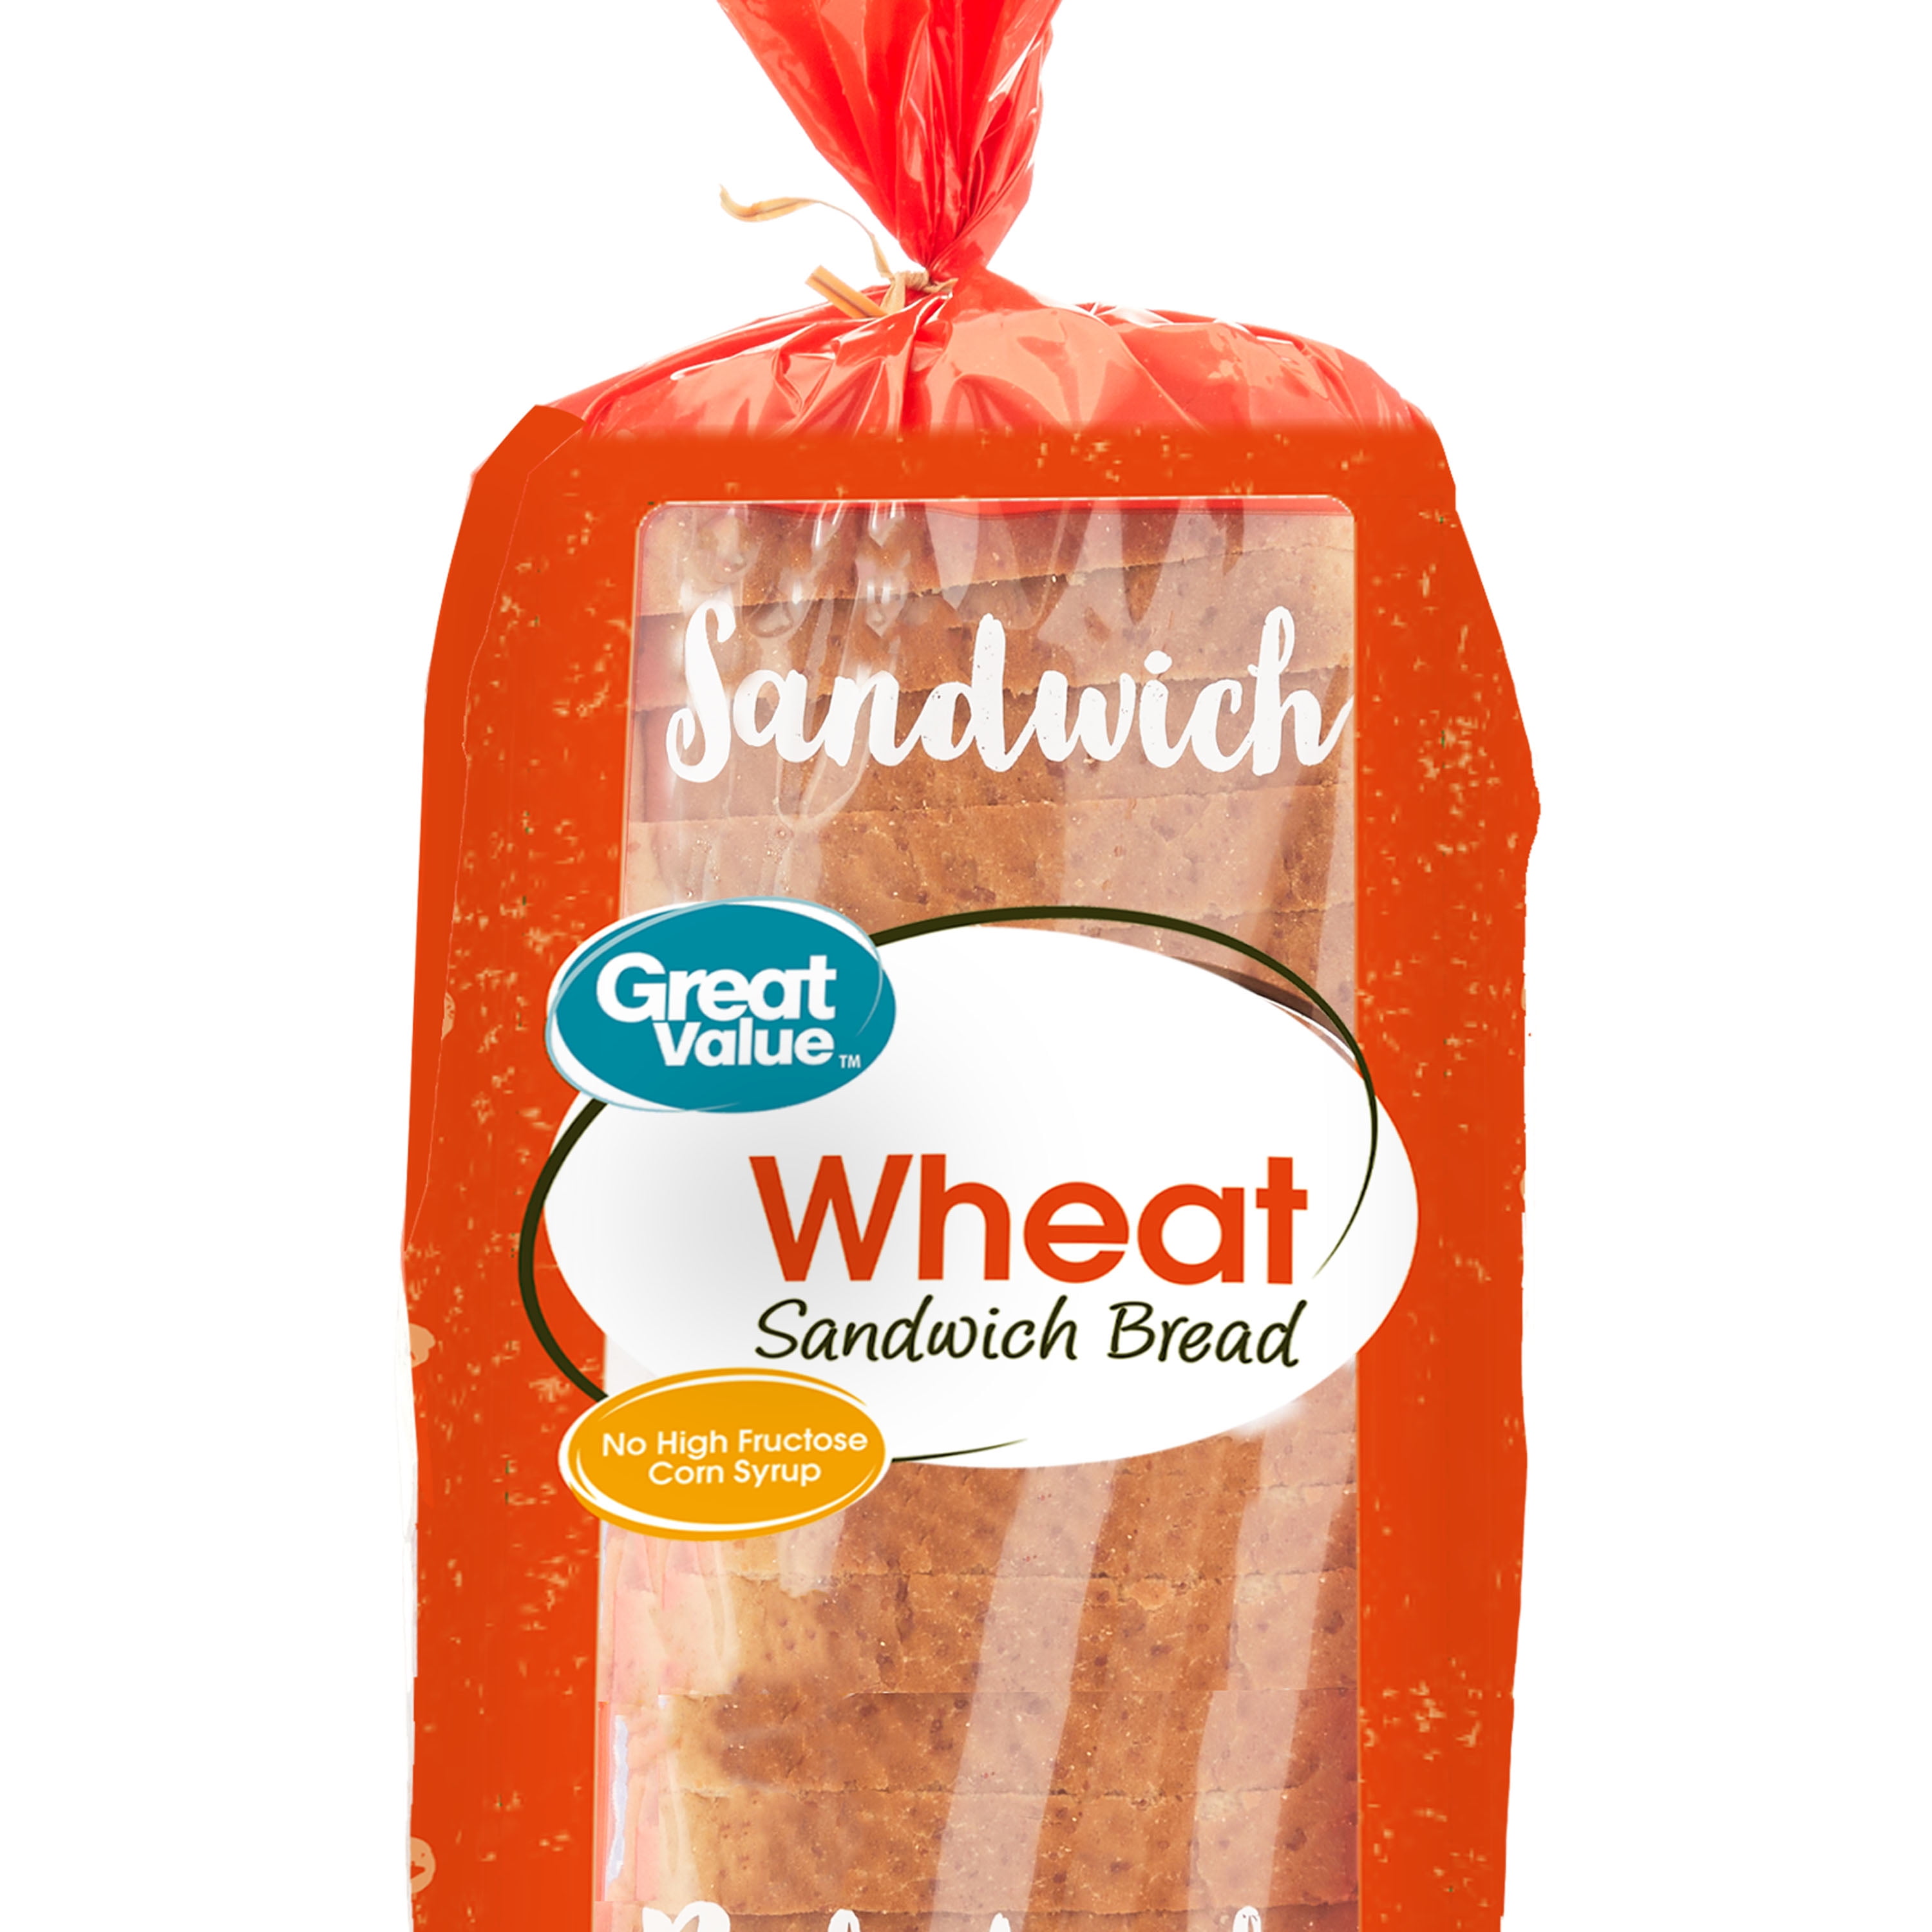 Great Value Wheat Sandwich Bread Loaf, 20 oz